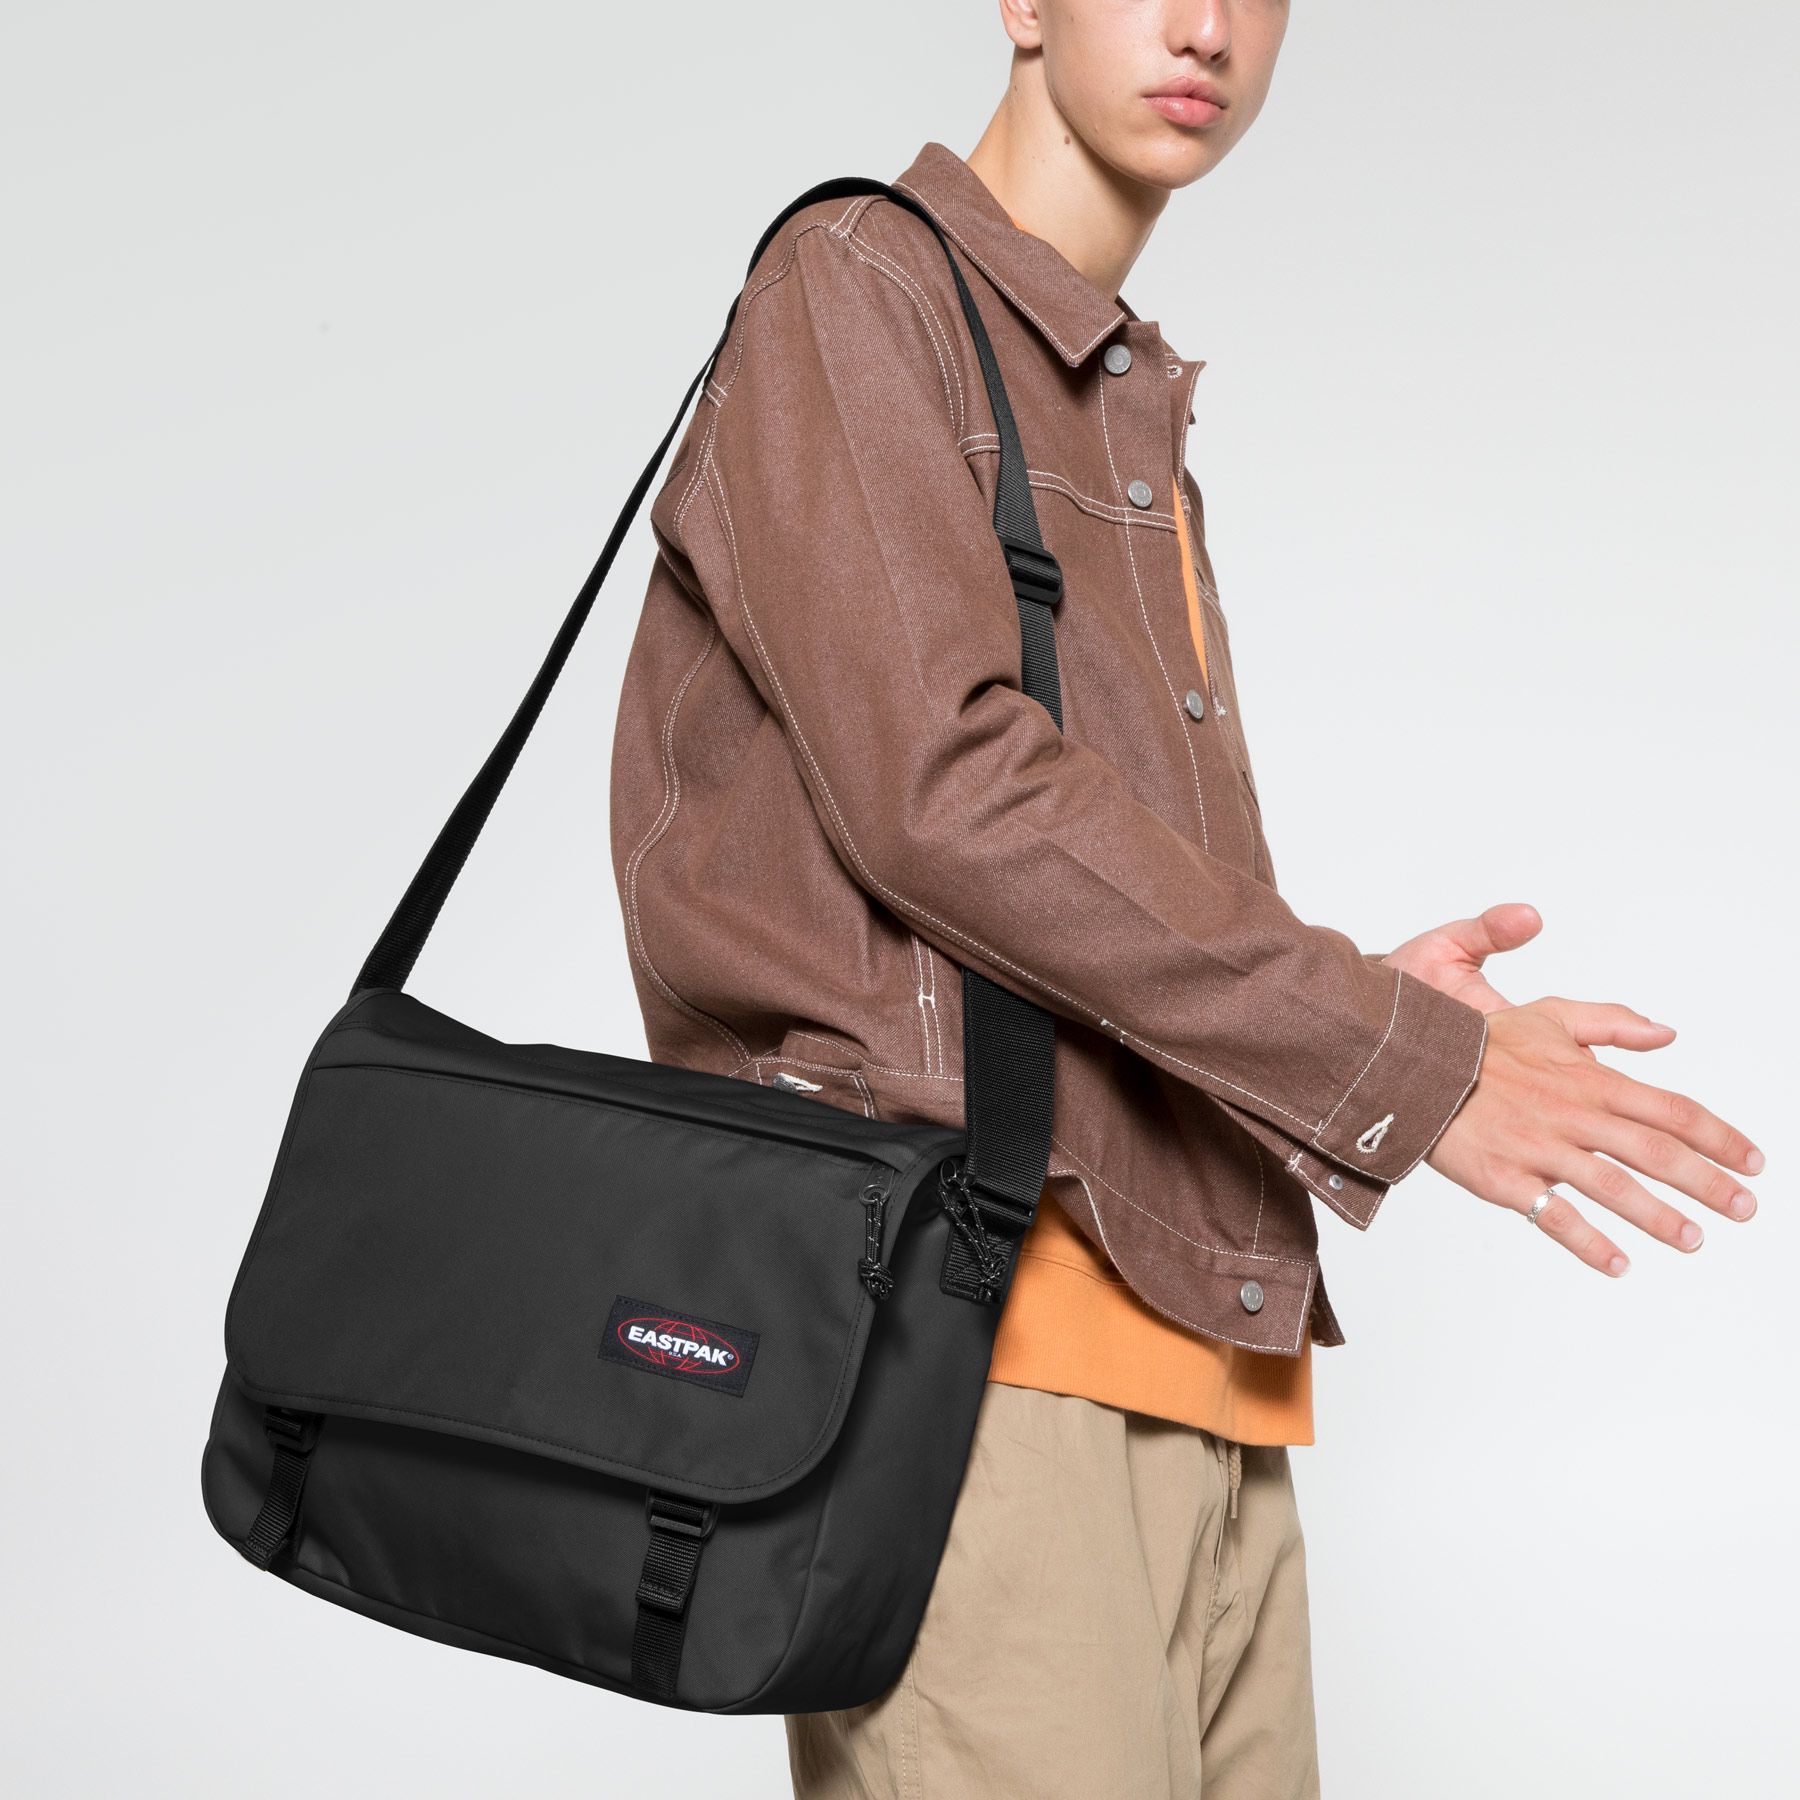 BESTELLIE Bolso bandolera bolso bandolera bolsa de lona para computadora portátil para trabajo y escuela múltiples bolsillos 